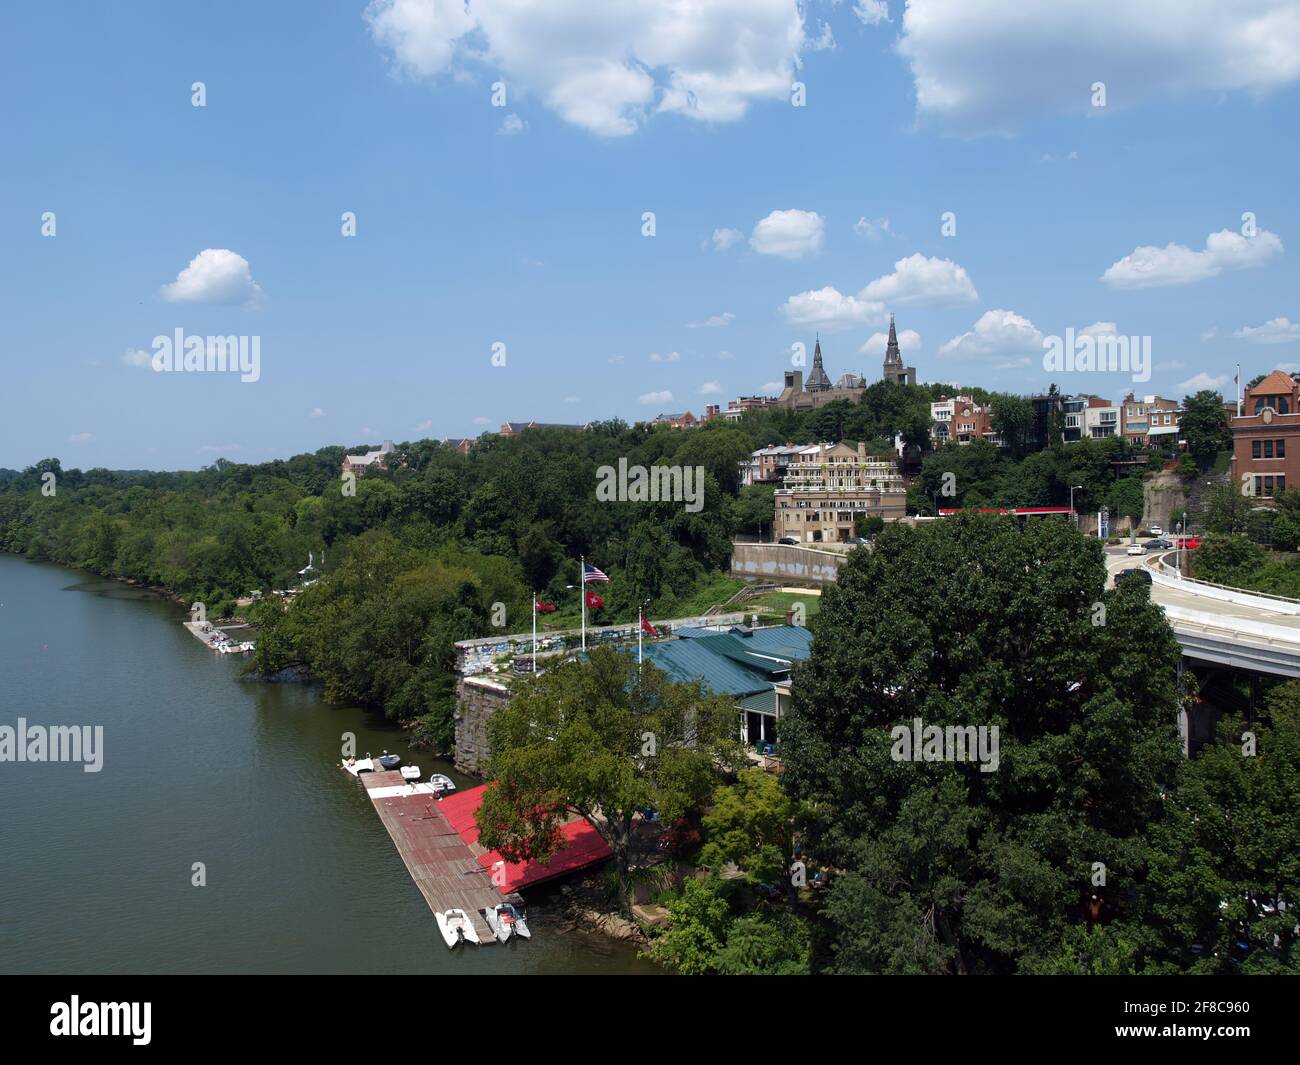 La Georgetown University all'orizzonte offre una vista panoramica del lungomare sul fiume Potomac a Washington DC. Foto Stock